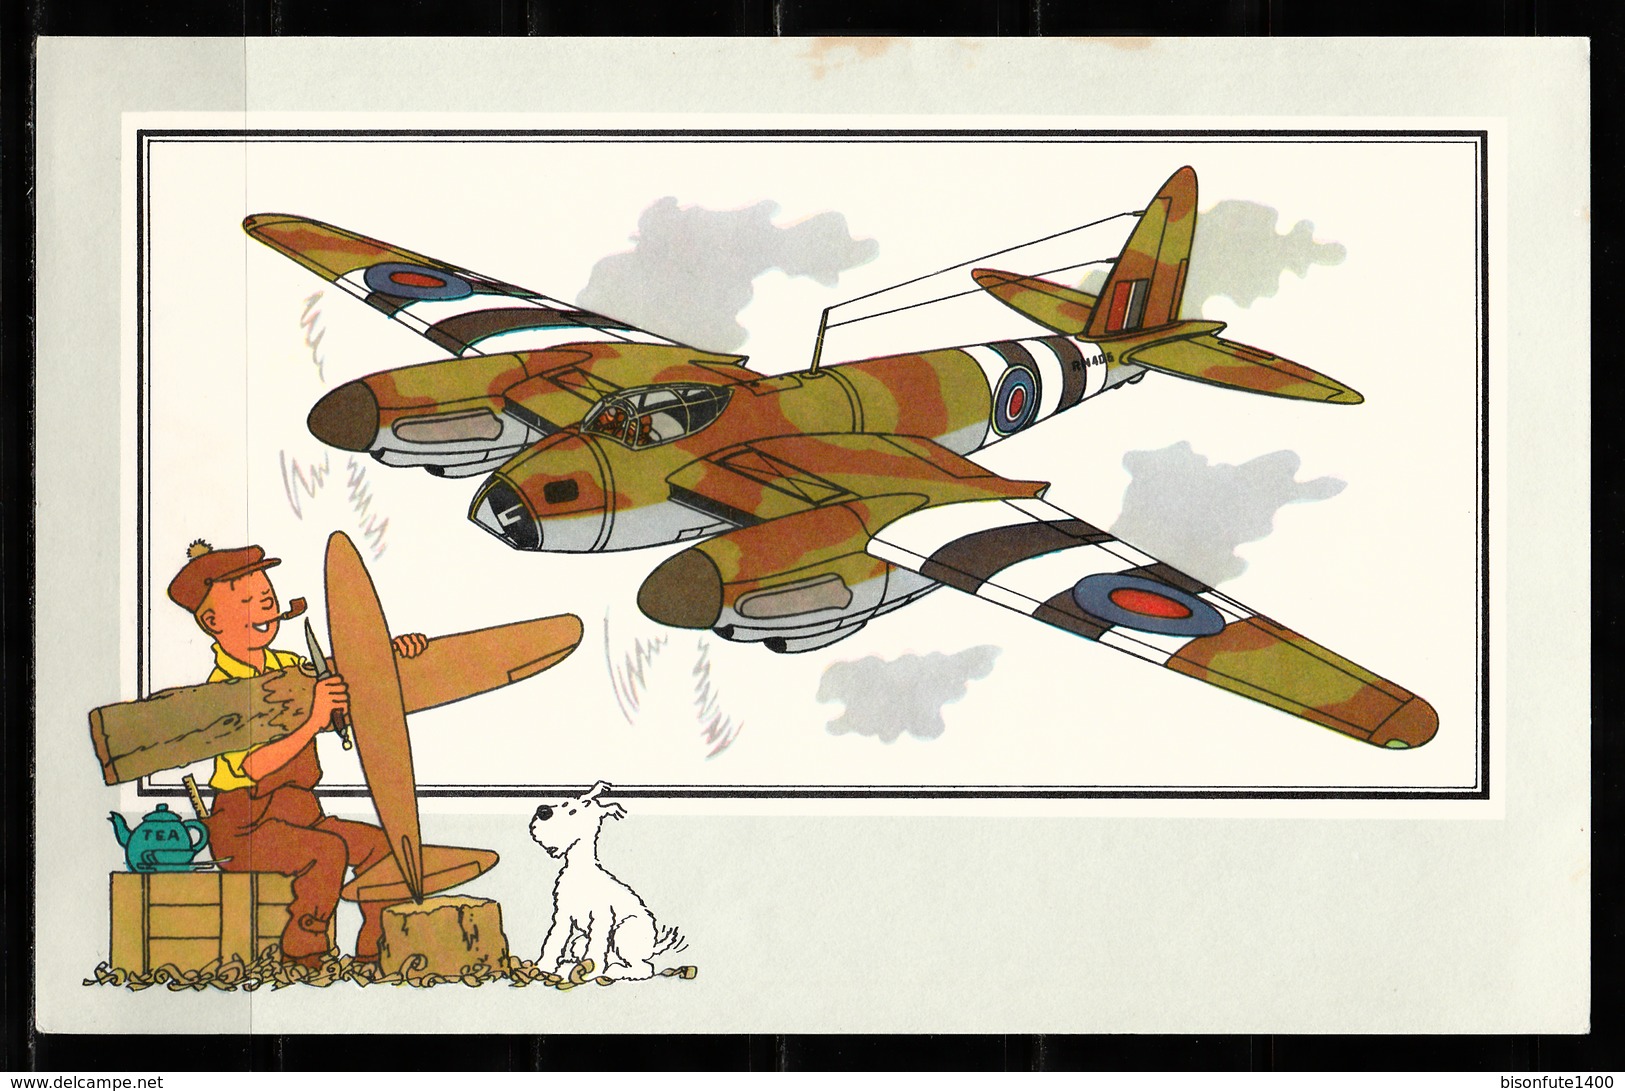 Tintin : Lot de 9 chromos "Voir et Savoir" par Hergé de 2ème choix ( avec taches de rouilles, légères pliures, etc... )